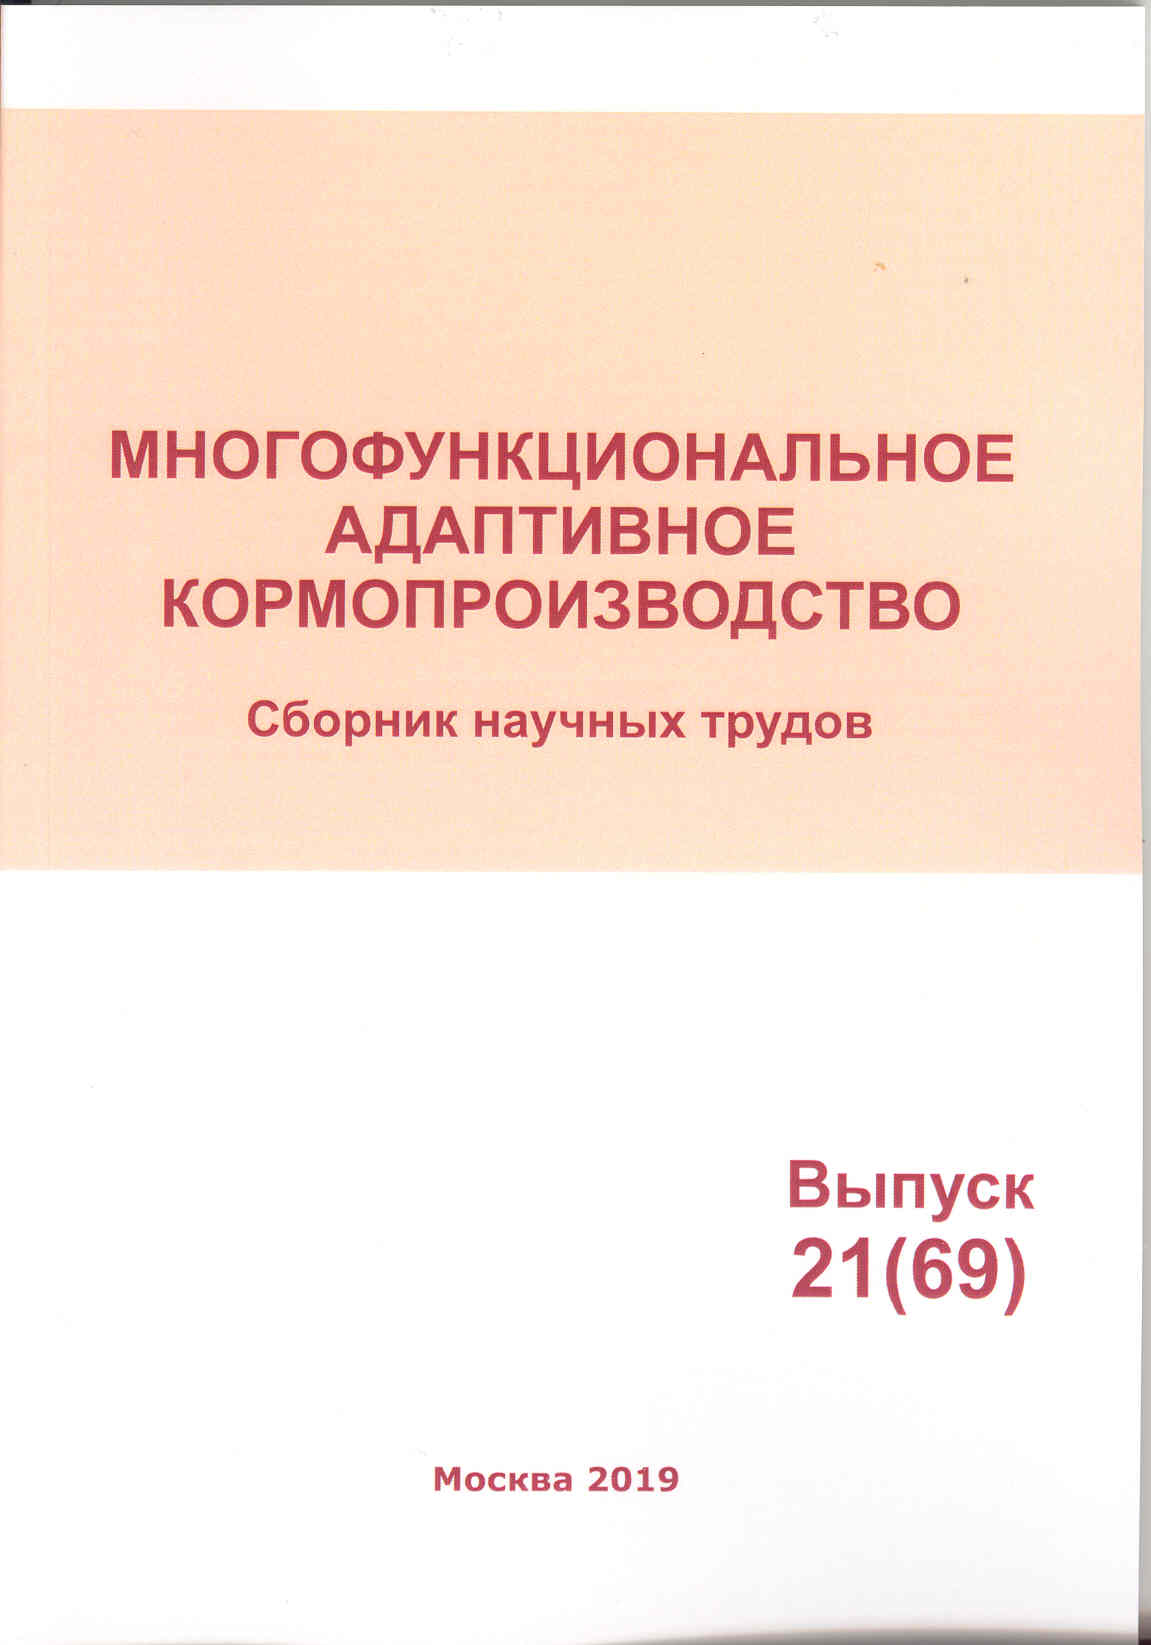             Многофункциональное адаптивное кормопроизводство № 21 (69)
    